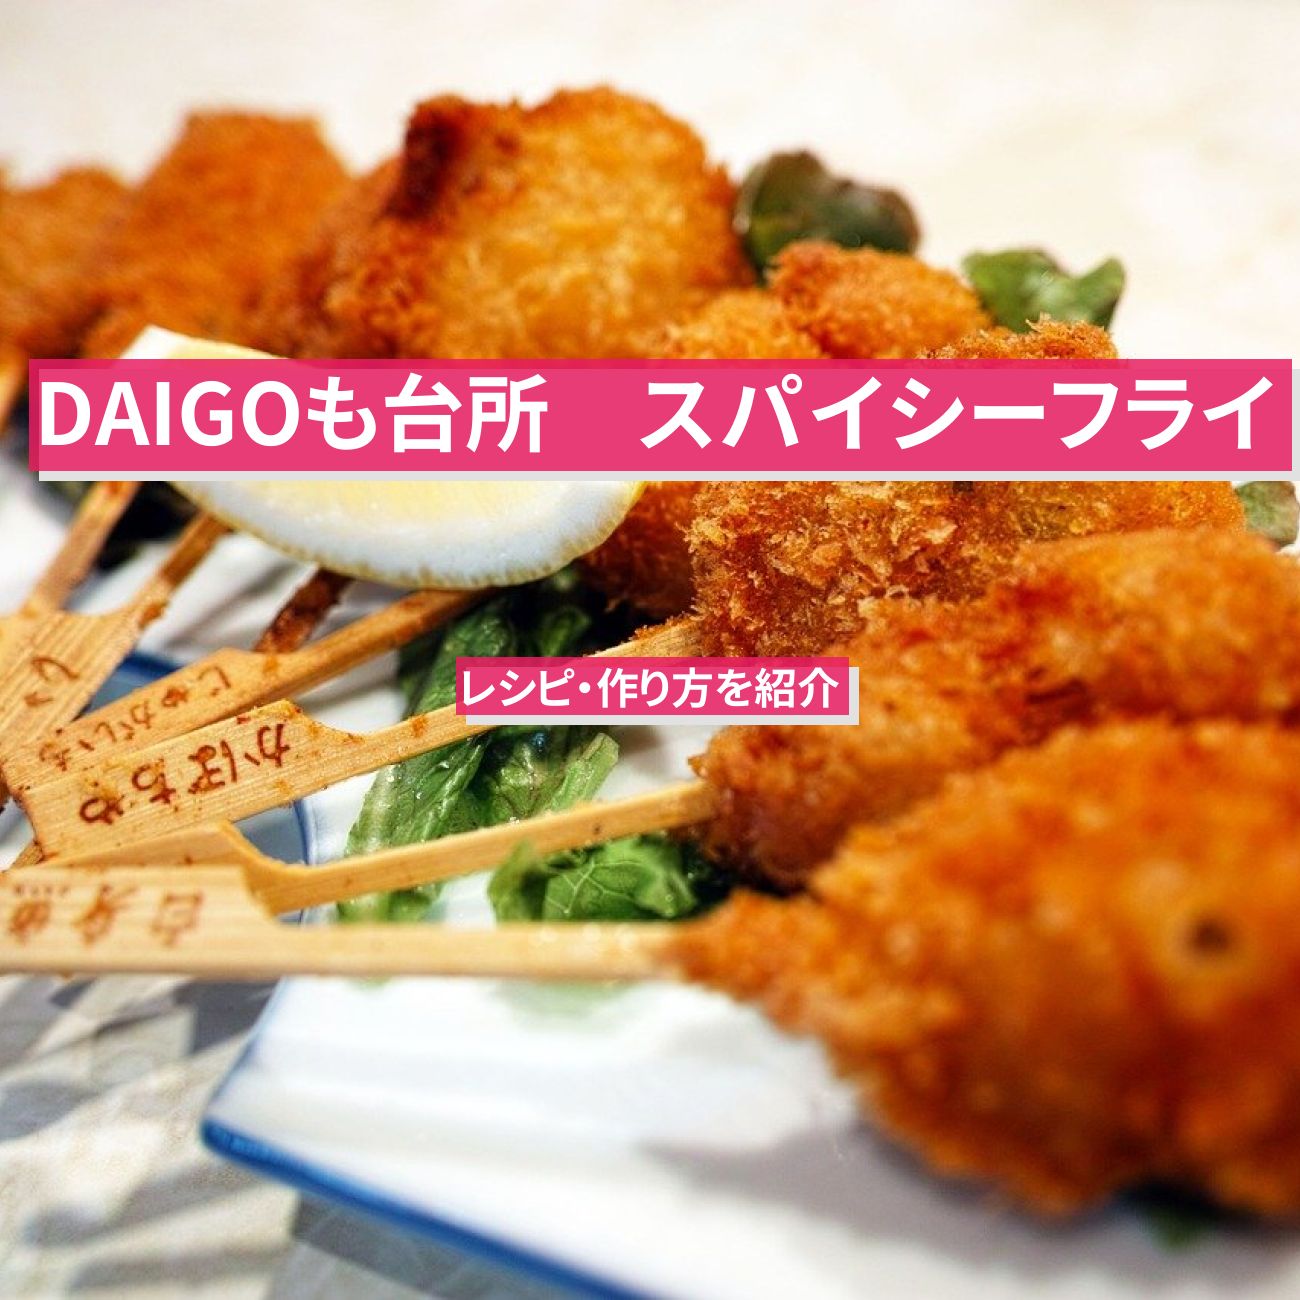 【DAIGOも台所】『スパイシーフライ』のレシピ・作り方を紹介〔ダイゴも台所〕